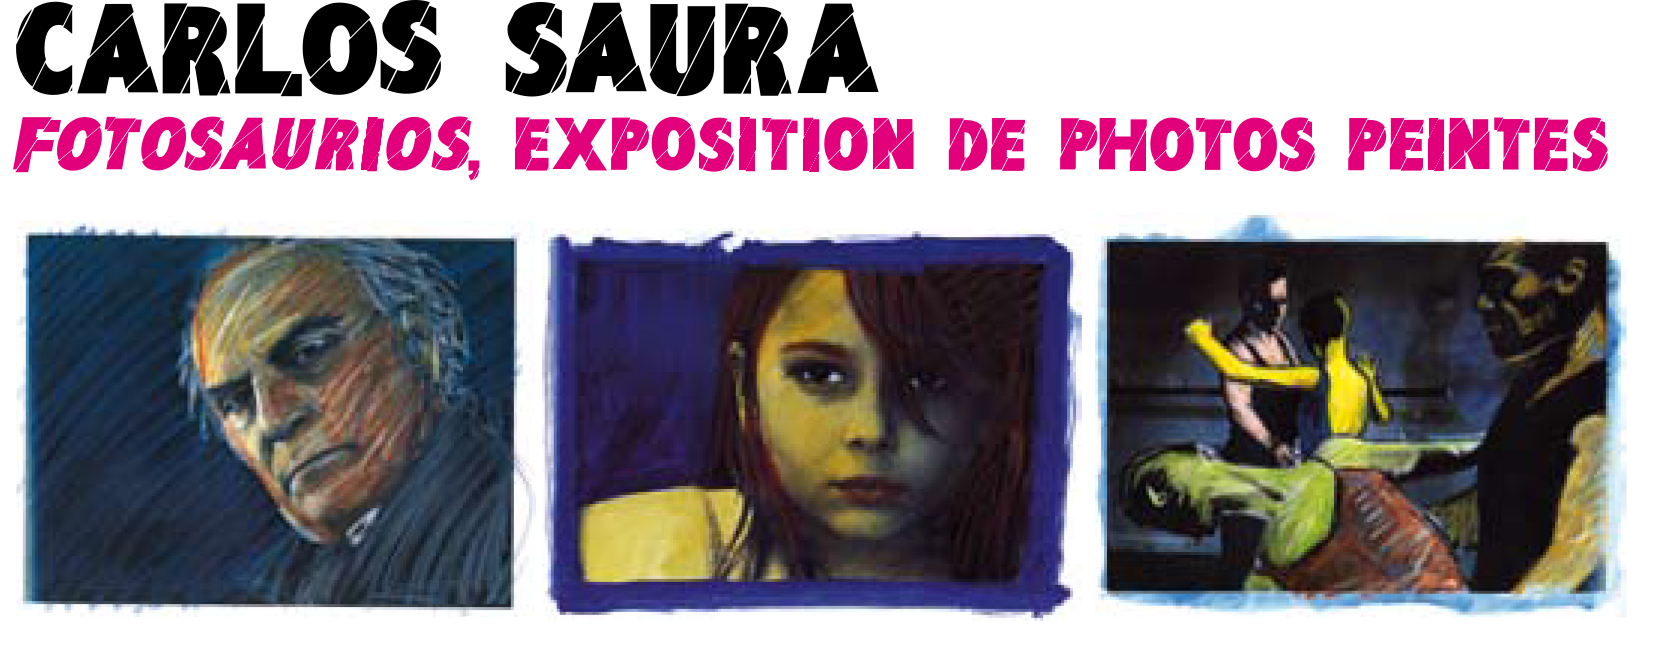 exposition-carlos-saura-fcen-2007